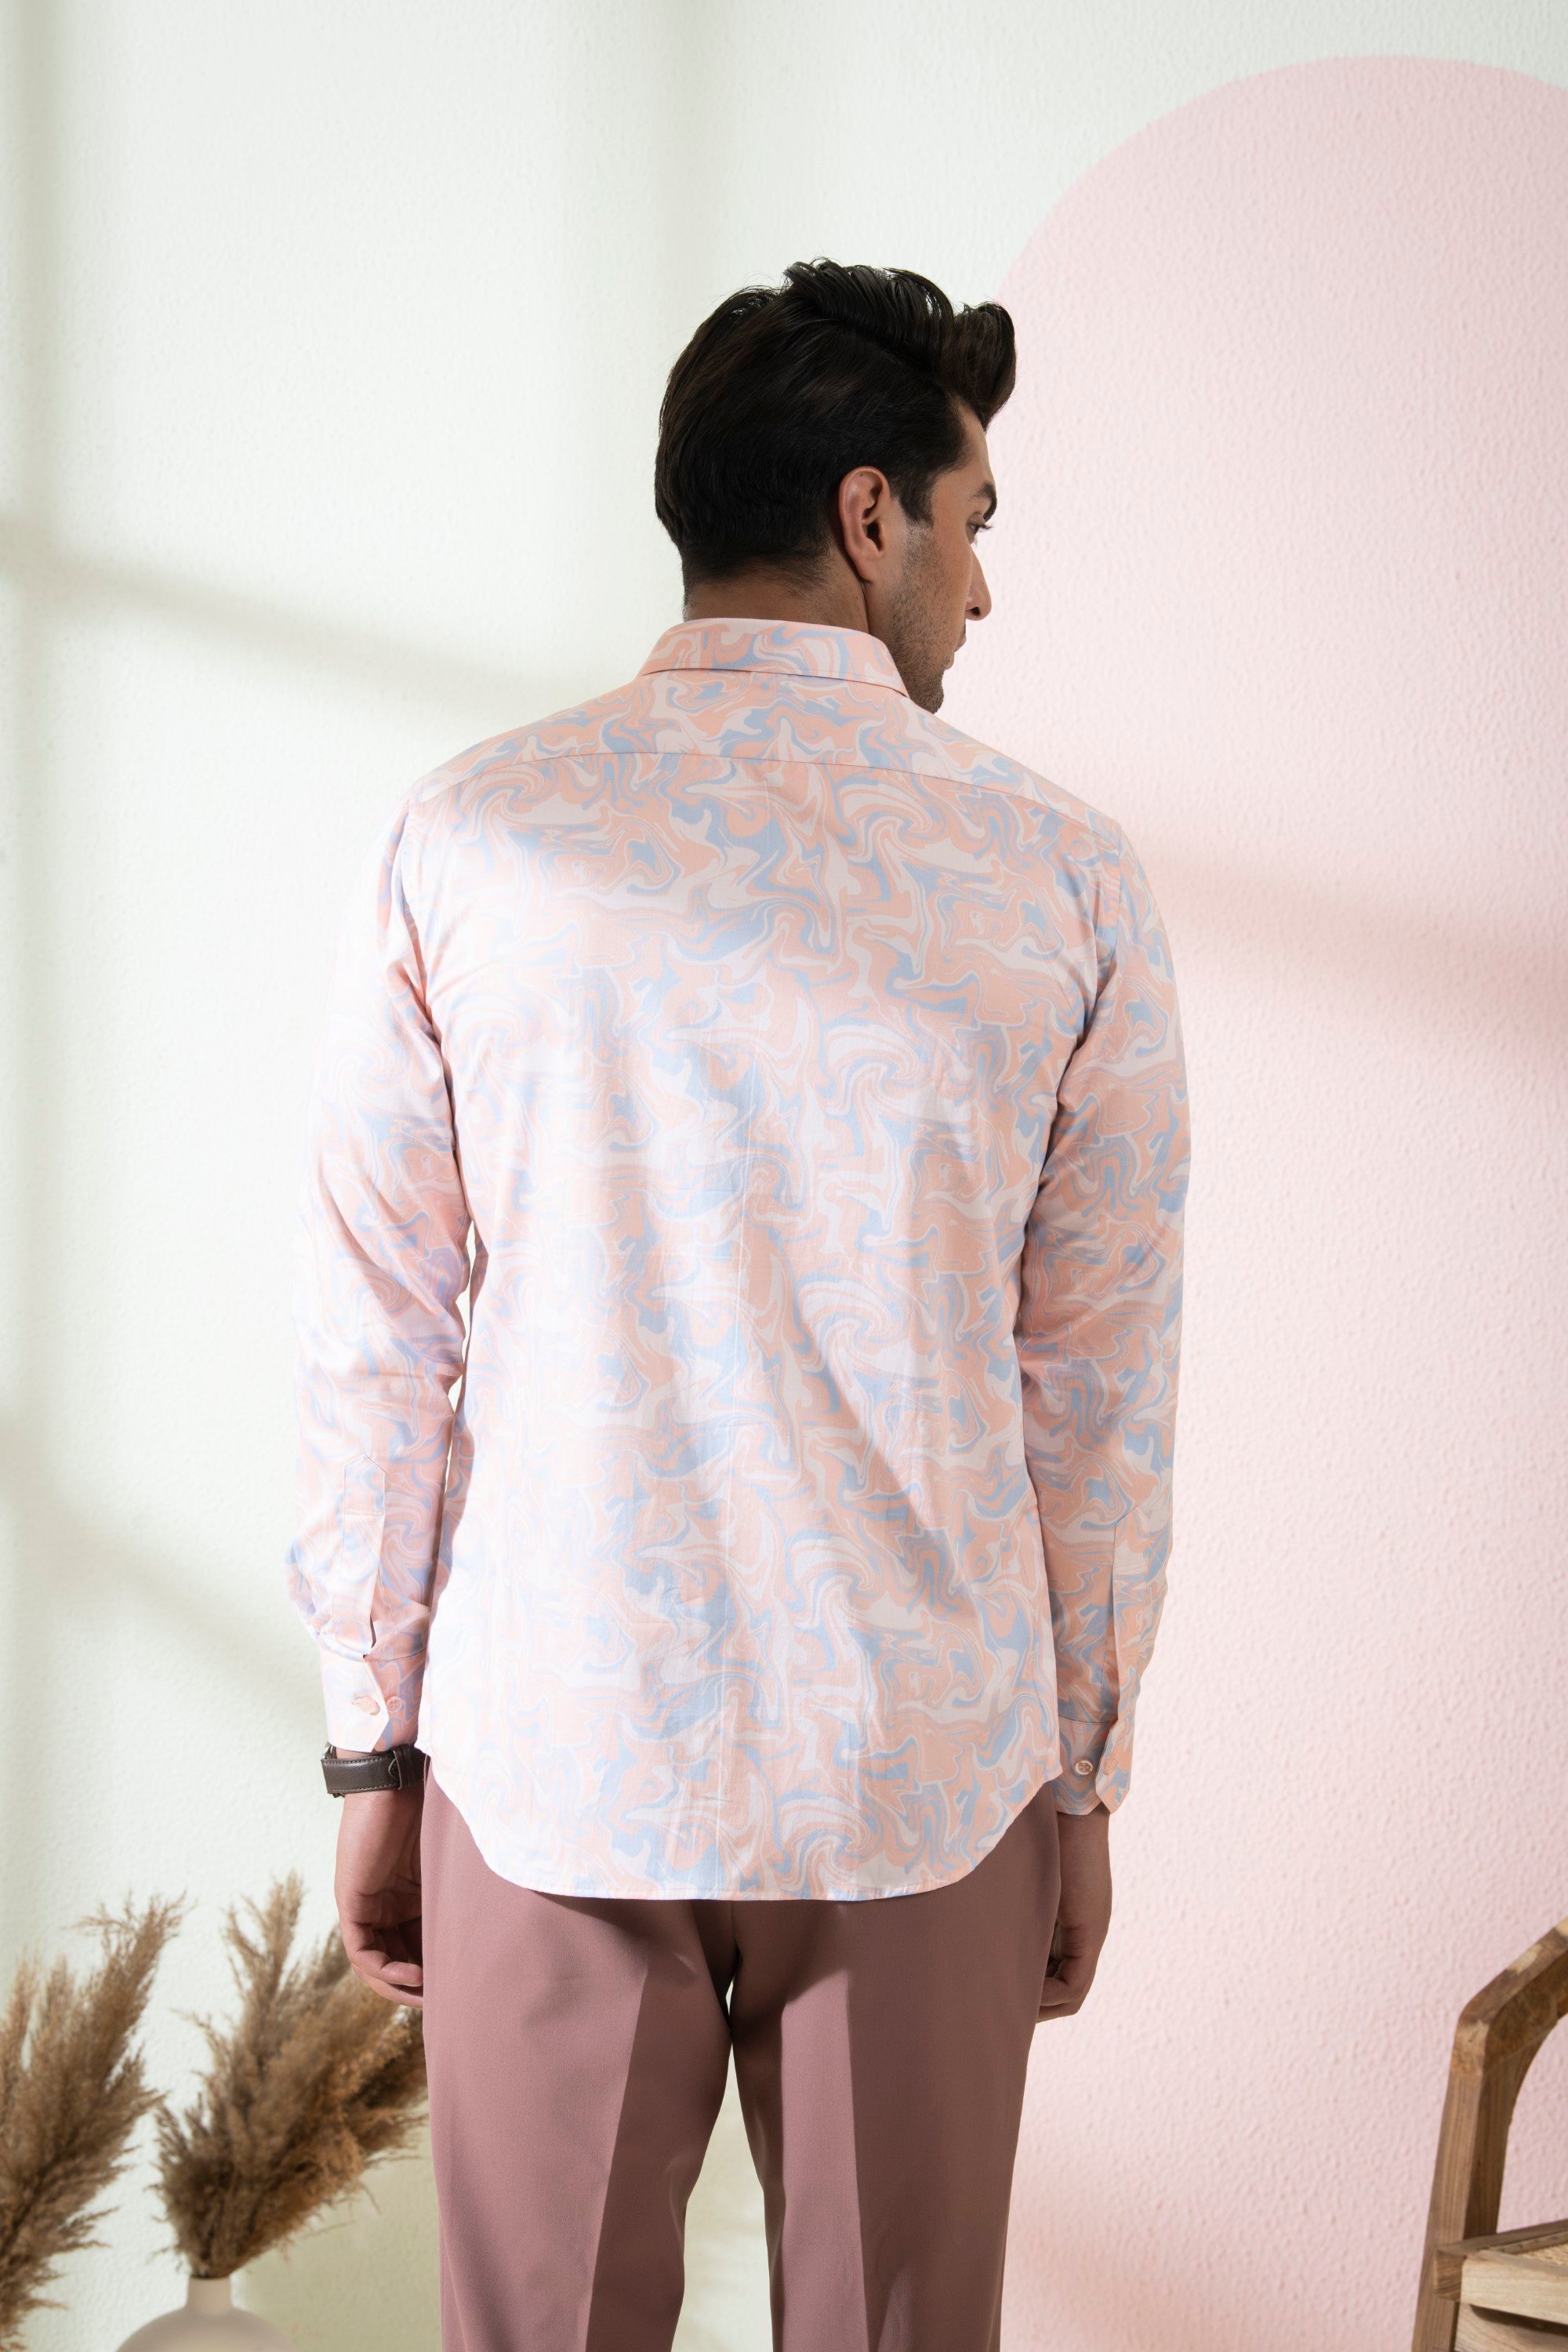 Men's Peach & Blue Color Scott Full Sleeves Shirt - Hilo Design